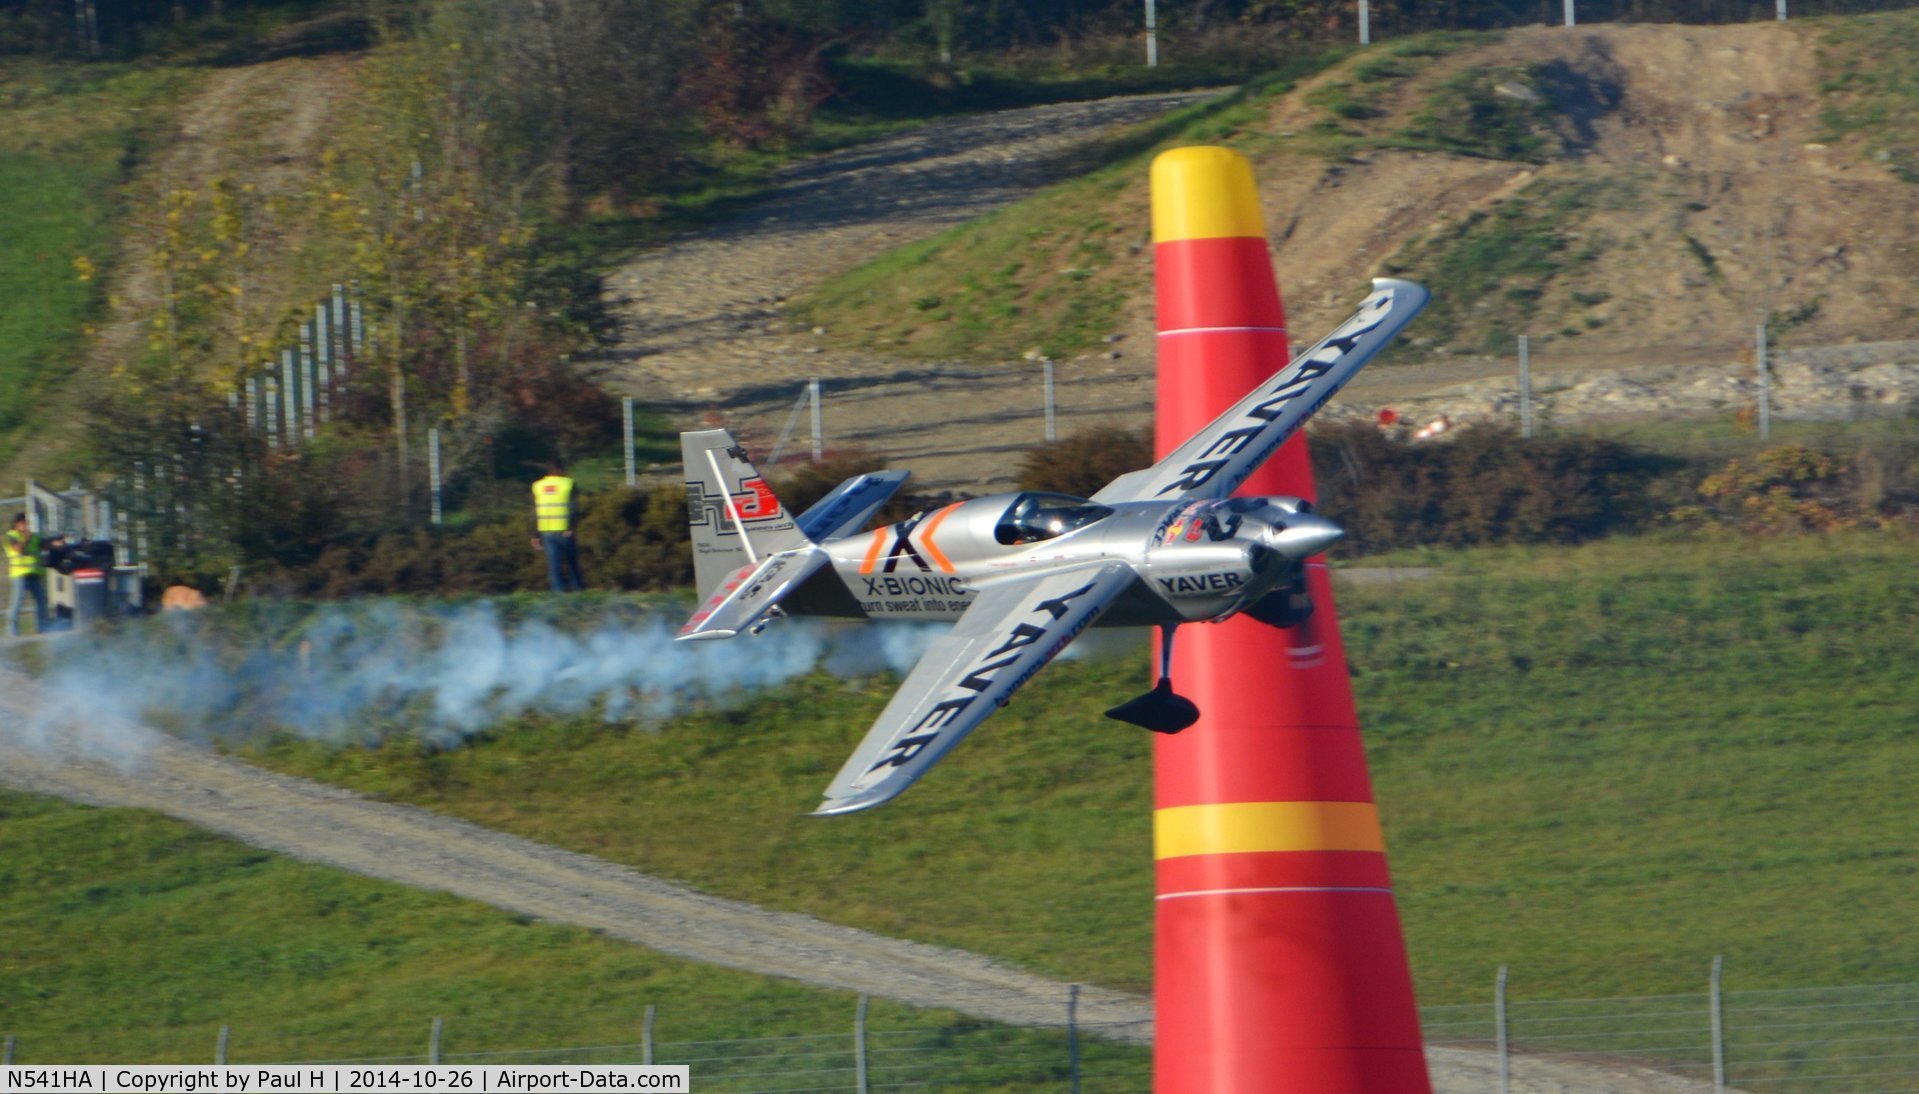 N541HA, 2008 Zivko Edge 540 C/N 0041A, Hannes Arch, RedBull AirRace Finale 2014, Spielberg, Austria